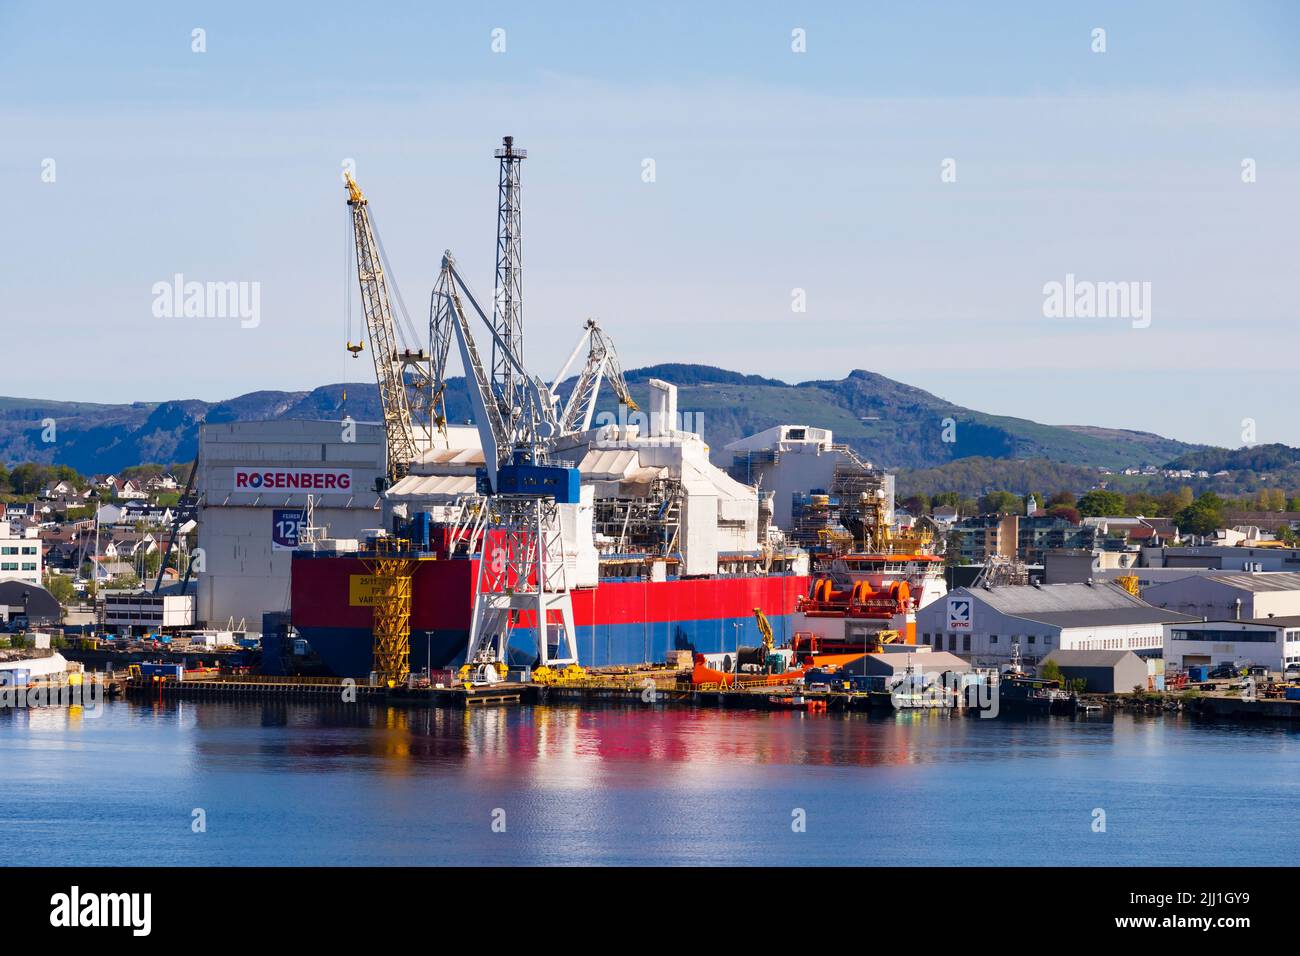 Worley Rosenberg et les chantiers navals de GMC et les quais secs avec des navires en cours de réparation. Stavanger, Norvège Banque D'Images